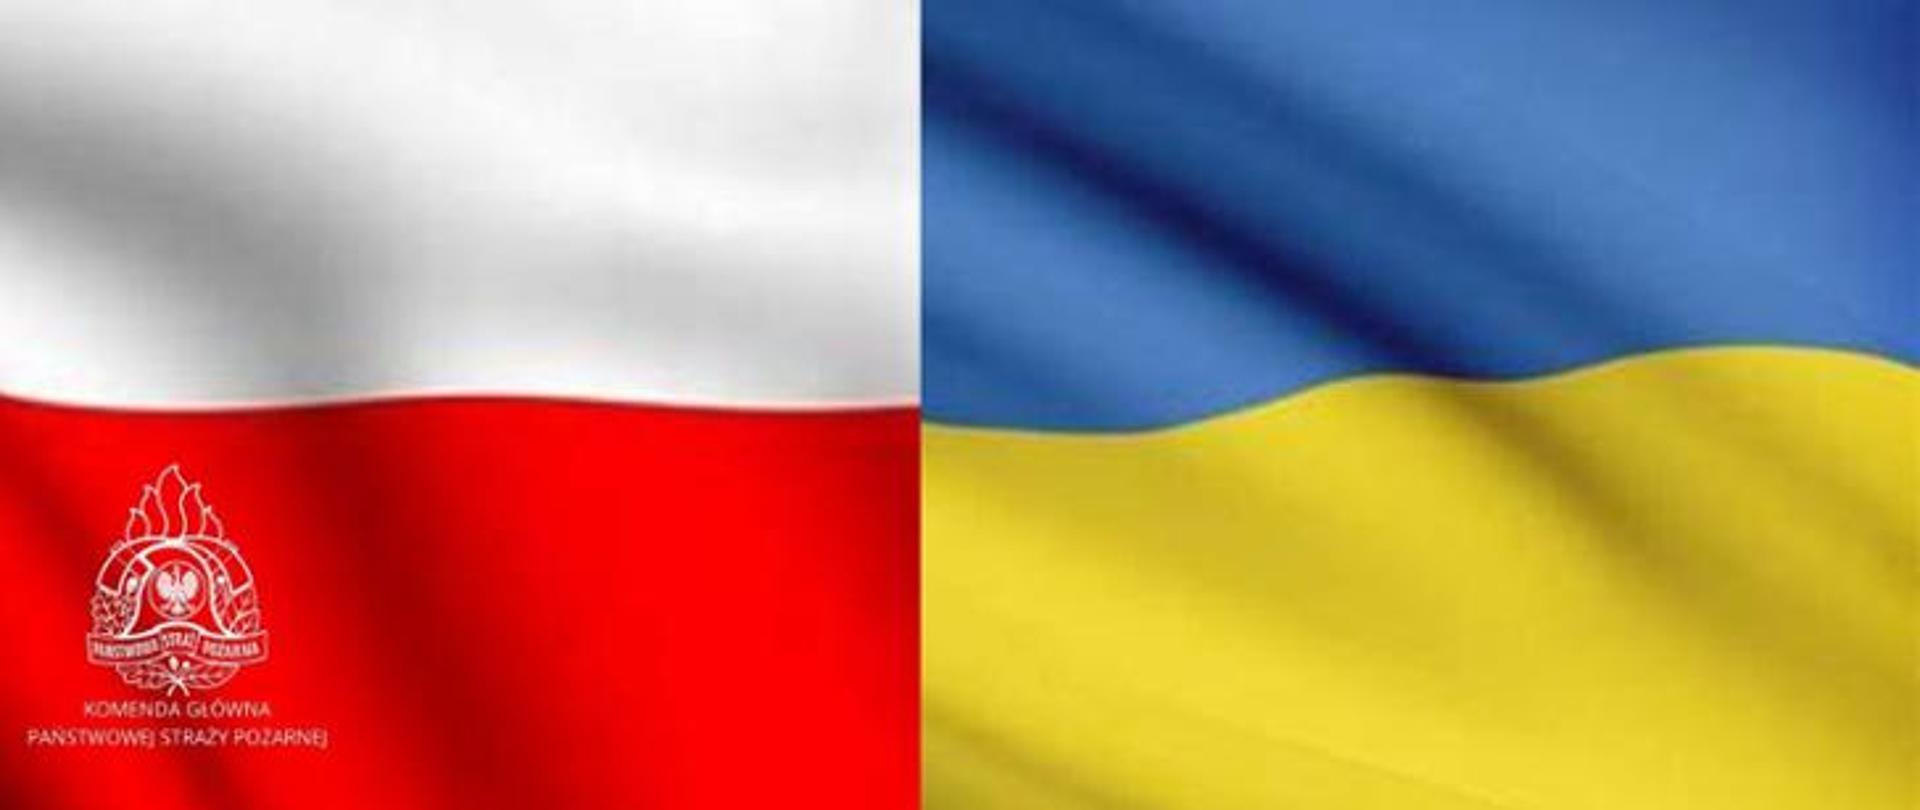 Zdjęcie przedstawia po lewej stronie flagę Polski a po prawej stronie flagę Ukraińską